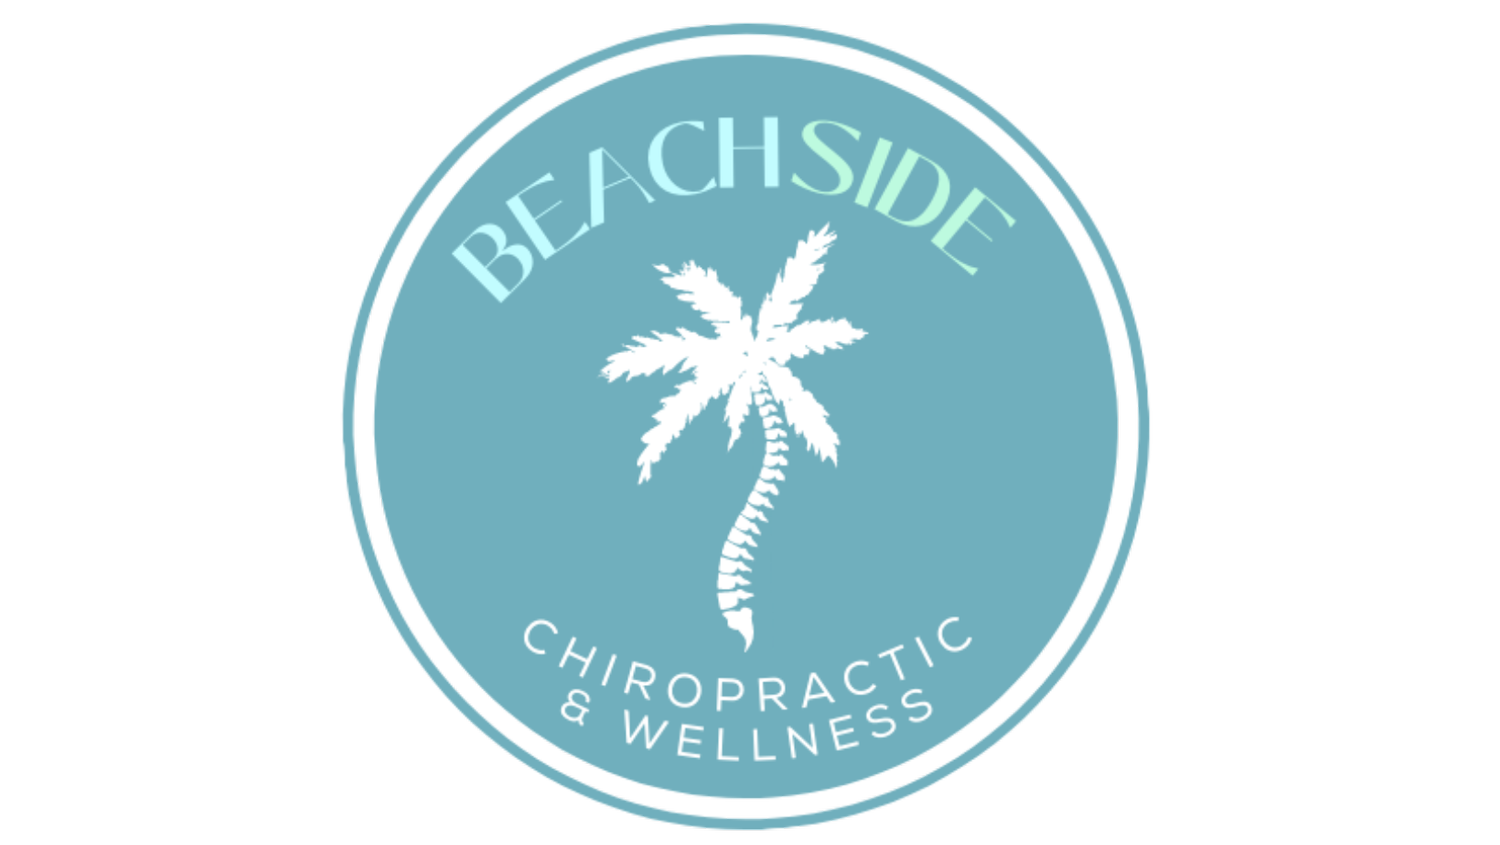 Beachside Chiropractic &amp; Wellness